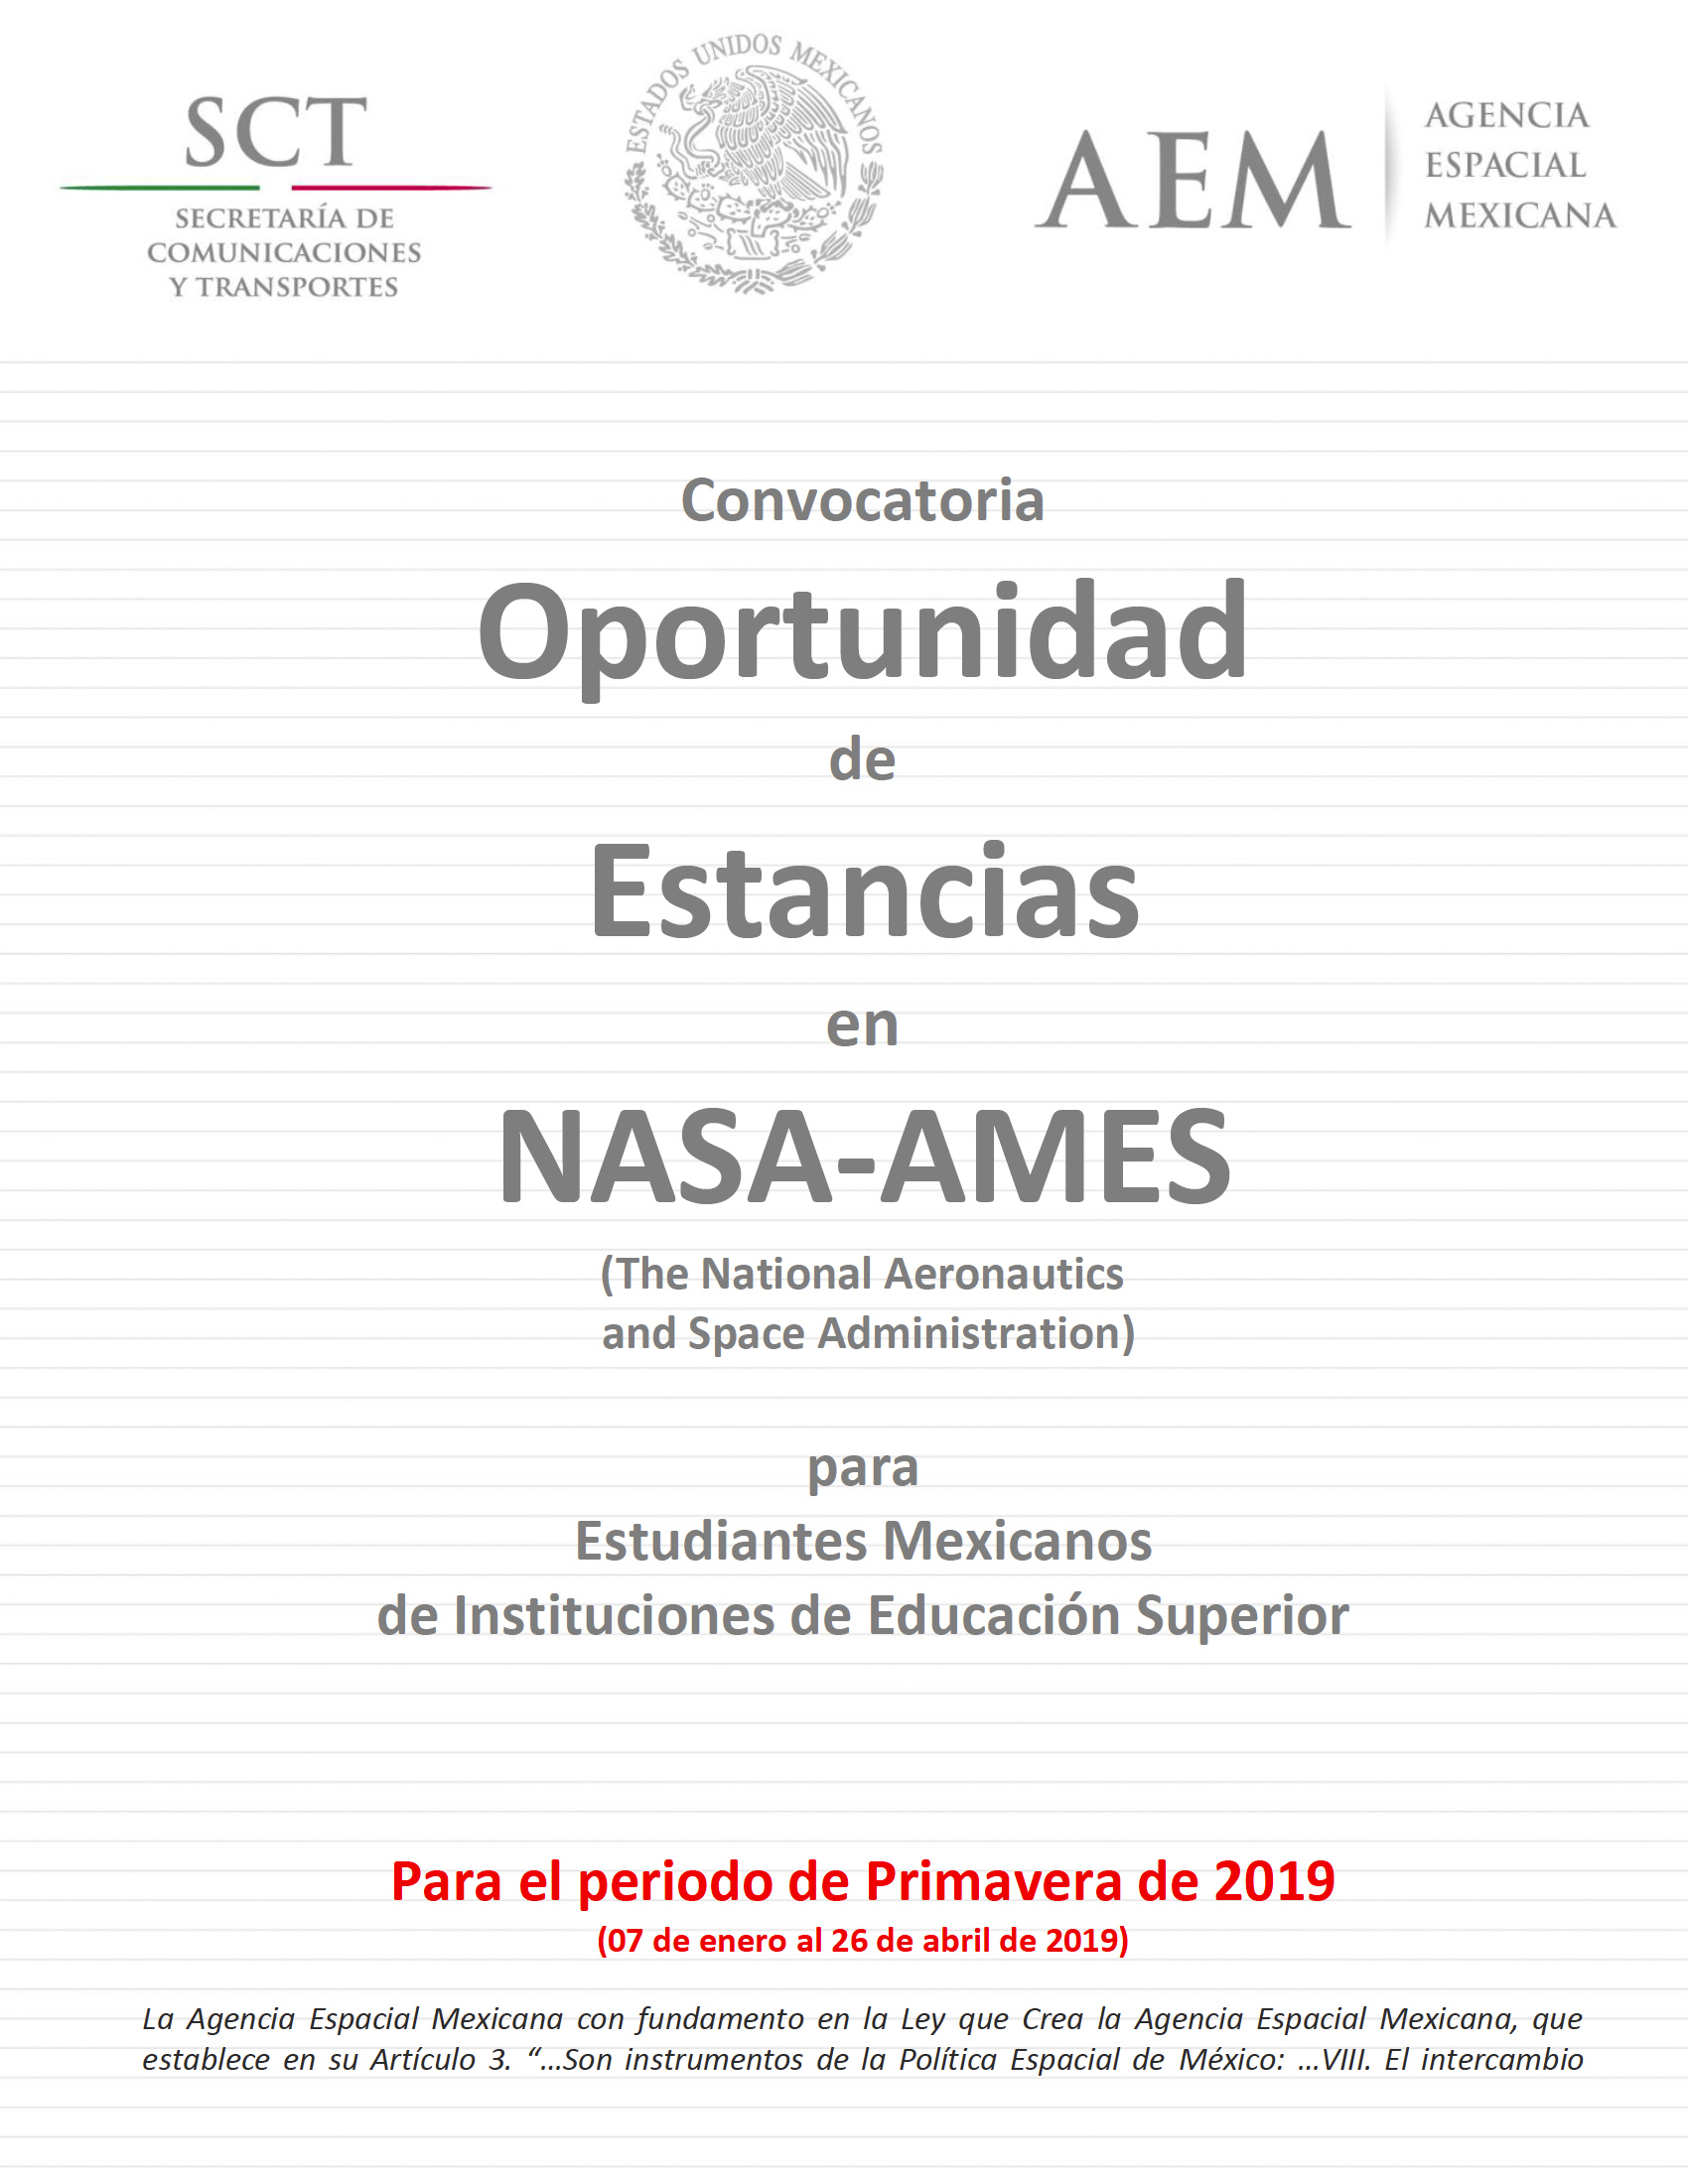 Convocatoria Estancias NASA Ames para el verano dosmildiezyocho en PDF